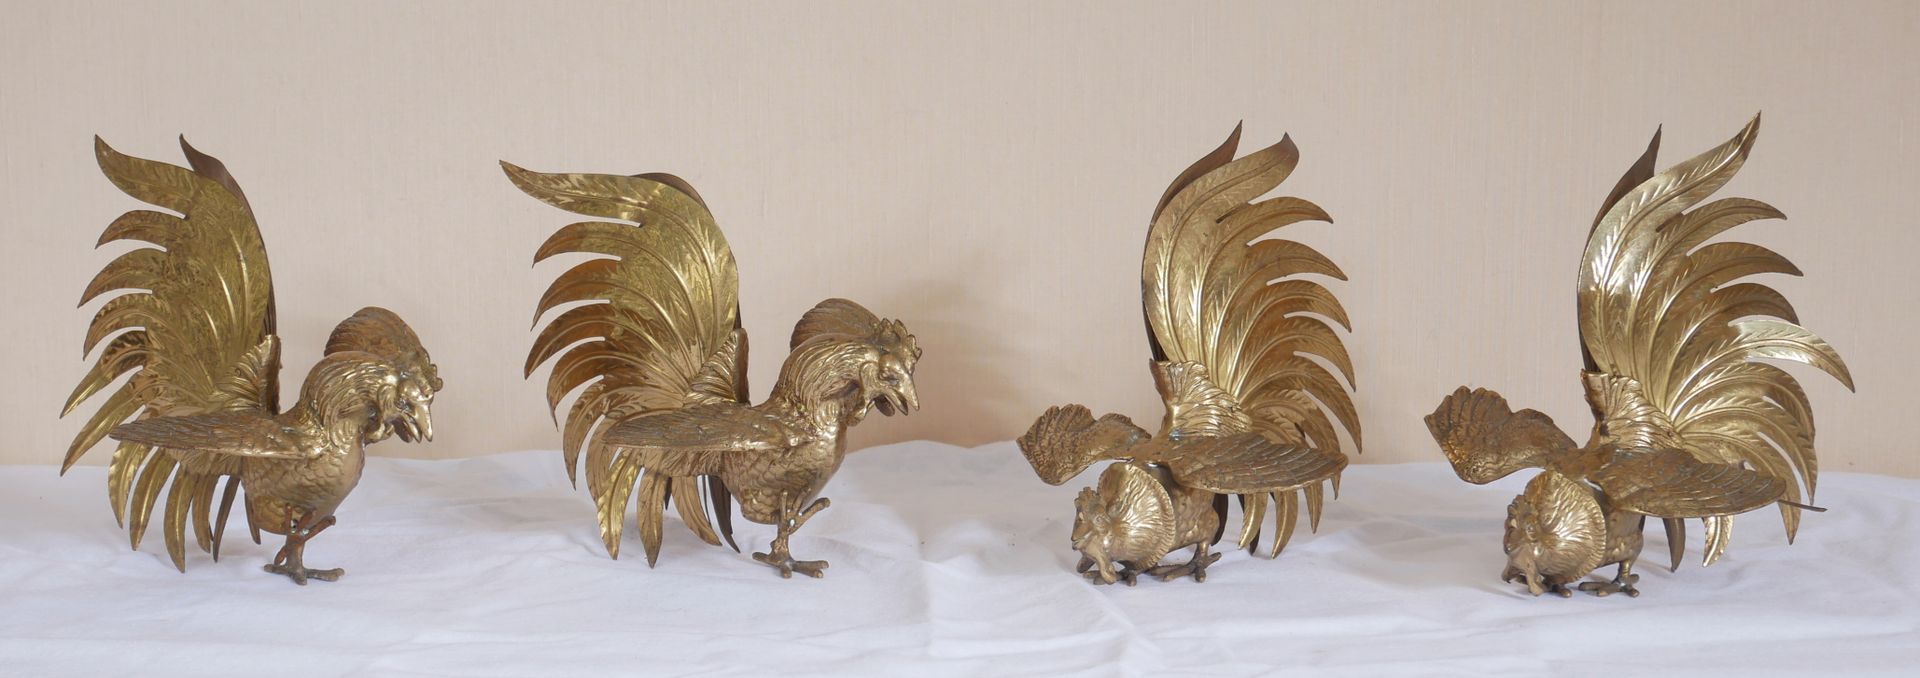 Null 两对青铜和镀金切割金属片的公鸡

高：22宽：23厘米。